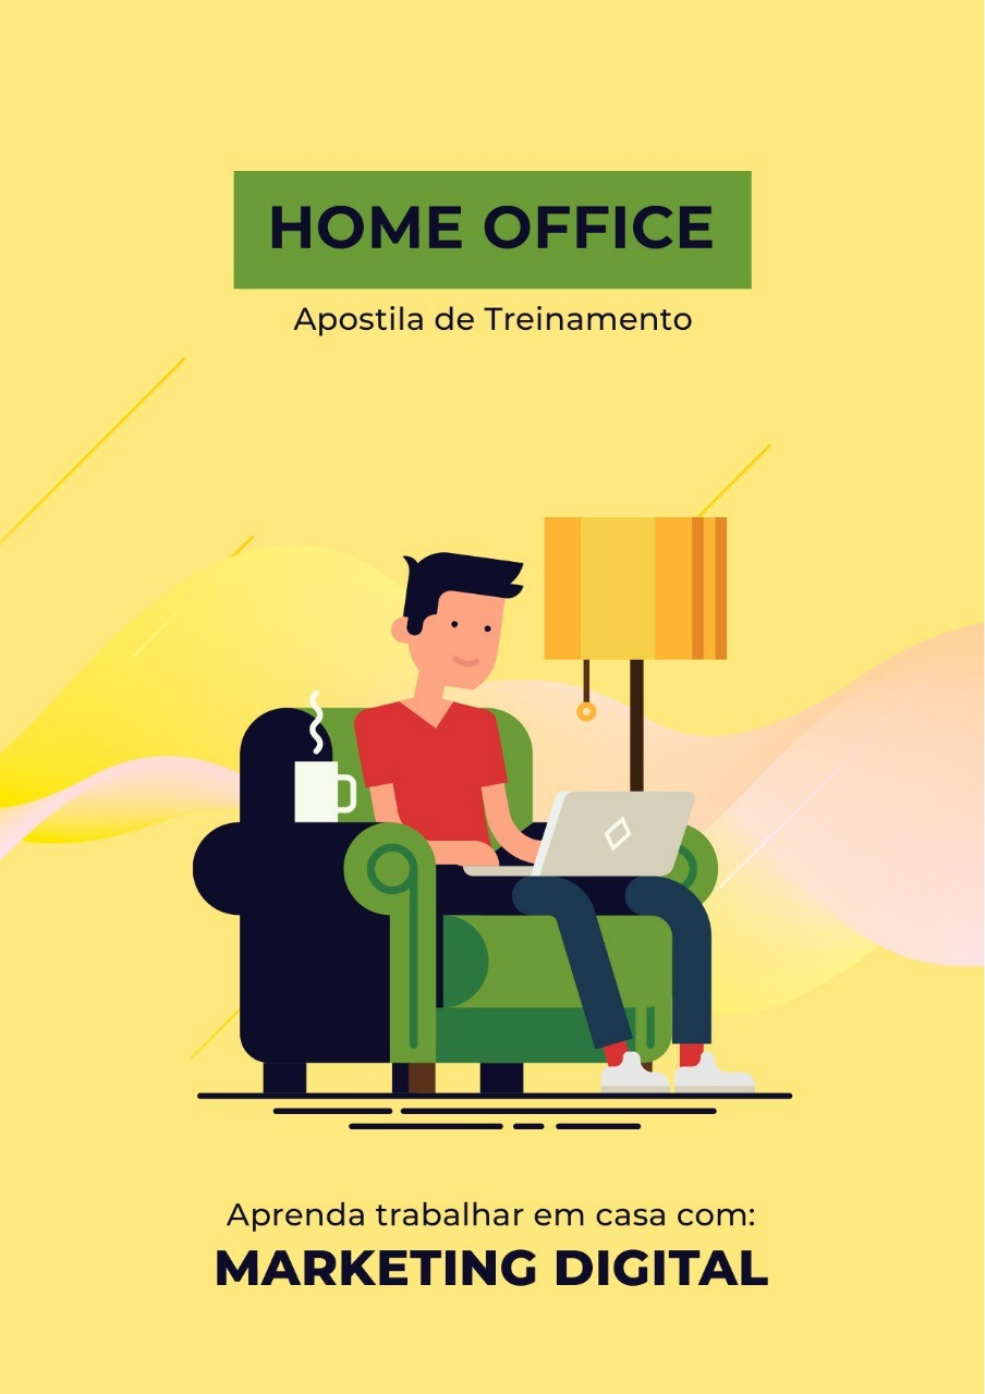 Digitador Online Home Office - Para Iniciantes Sem Experiência [100%  GRATUITO] 5 SITES 